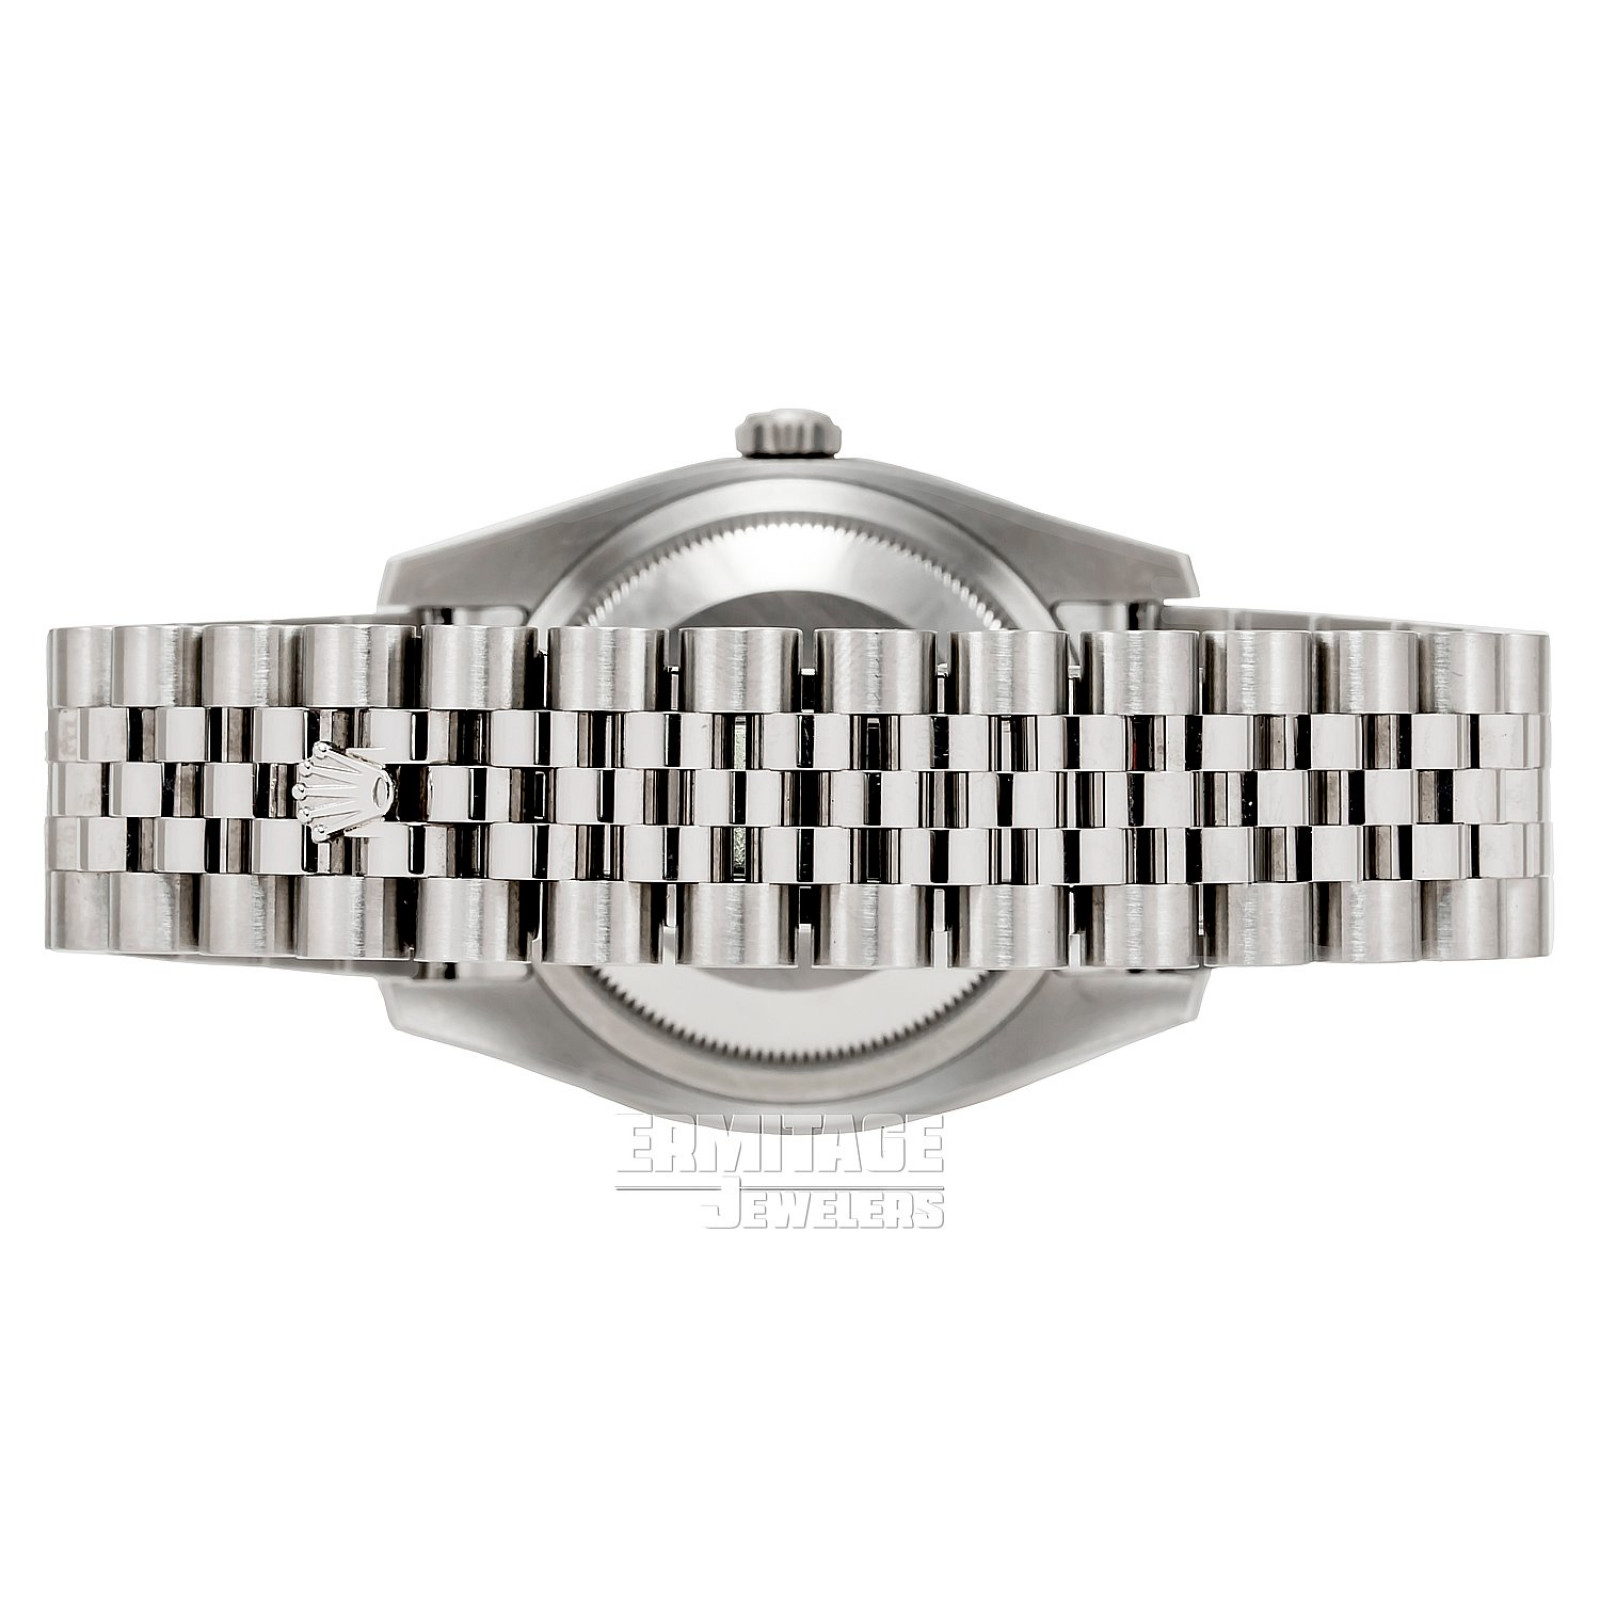 Rolex Datejust 116234 White Gold & Steel on Jubilee Bracelet